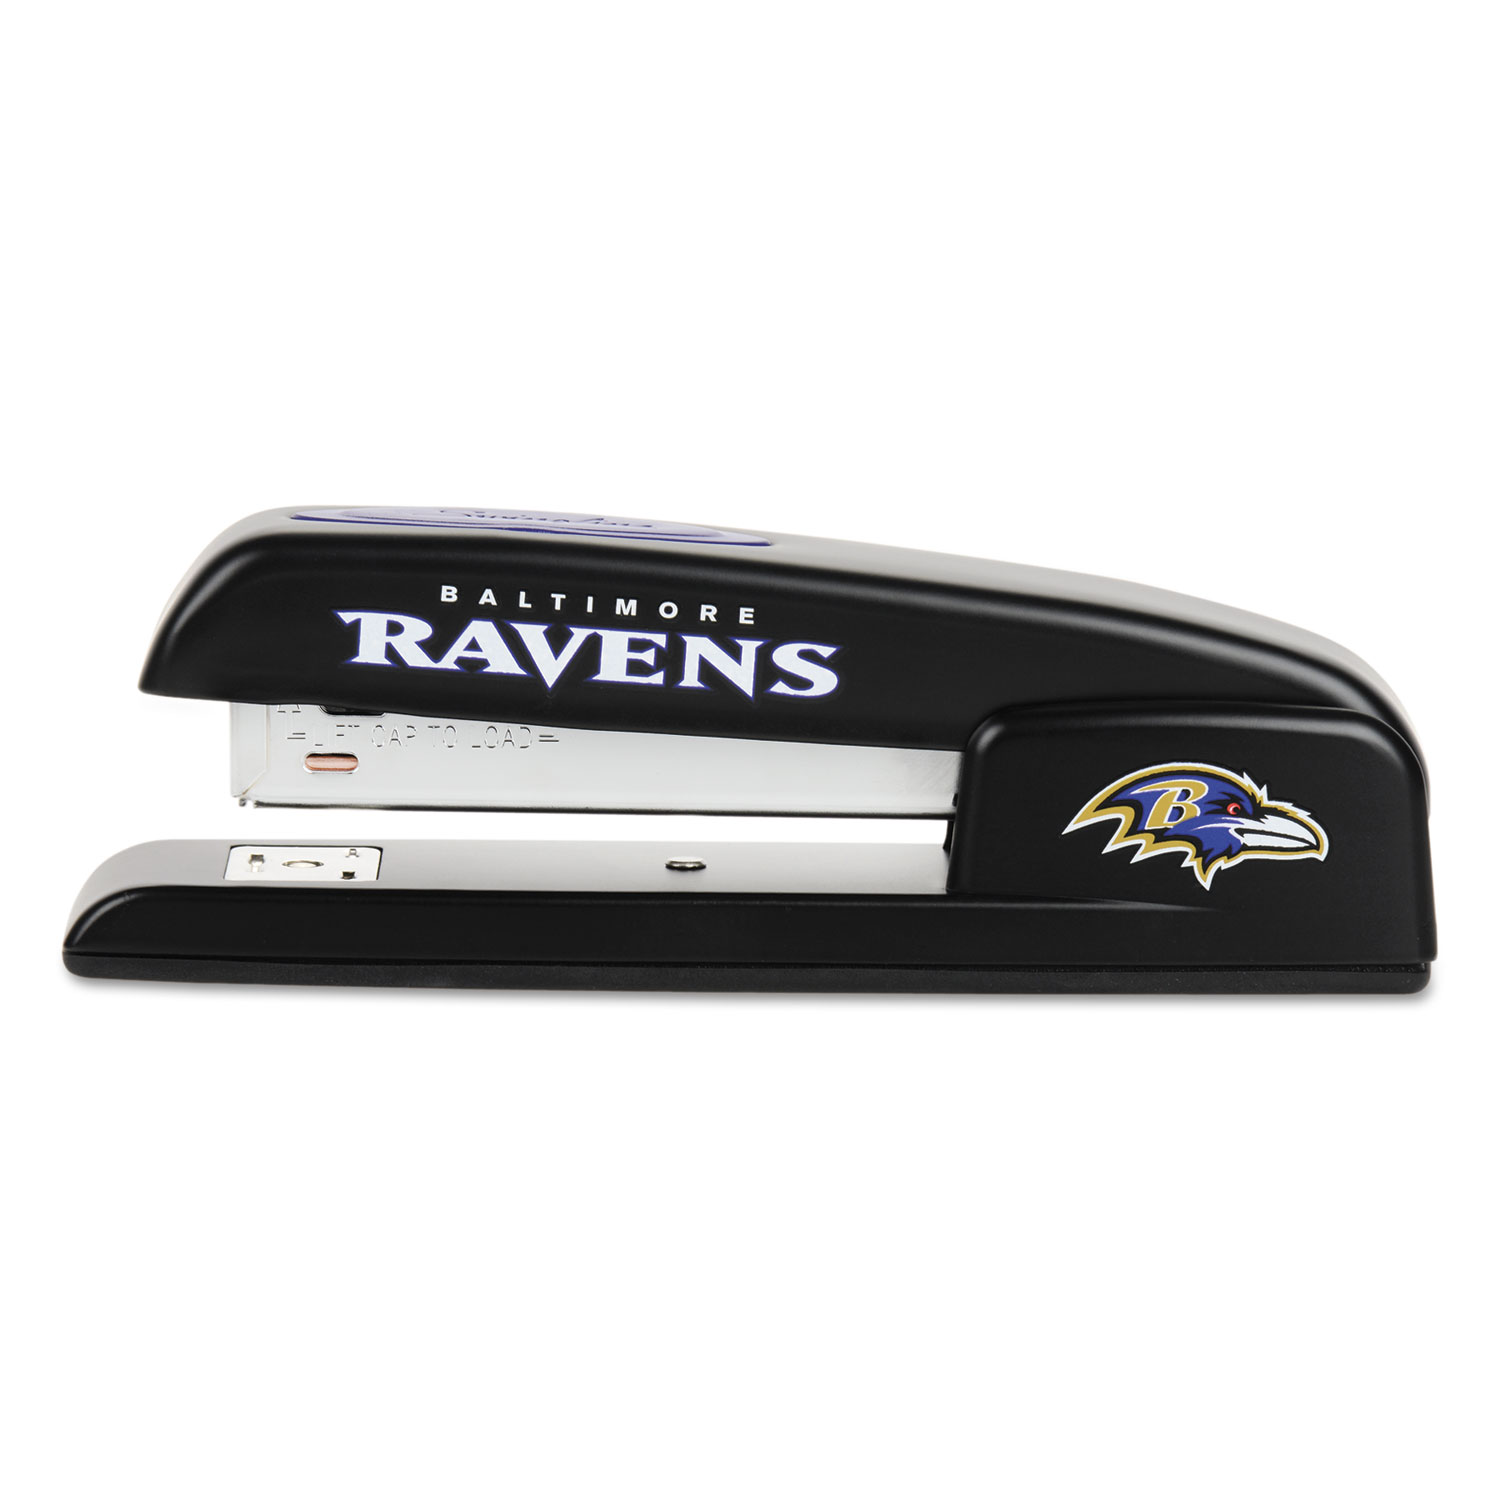 747 NFL Full Strip Stapler, 25-Sheet Capacity, Ravens